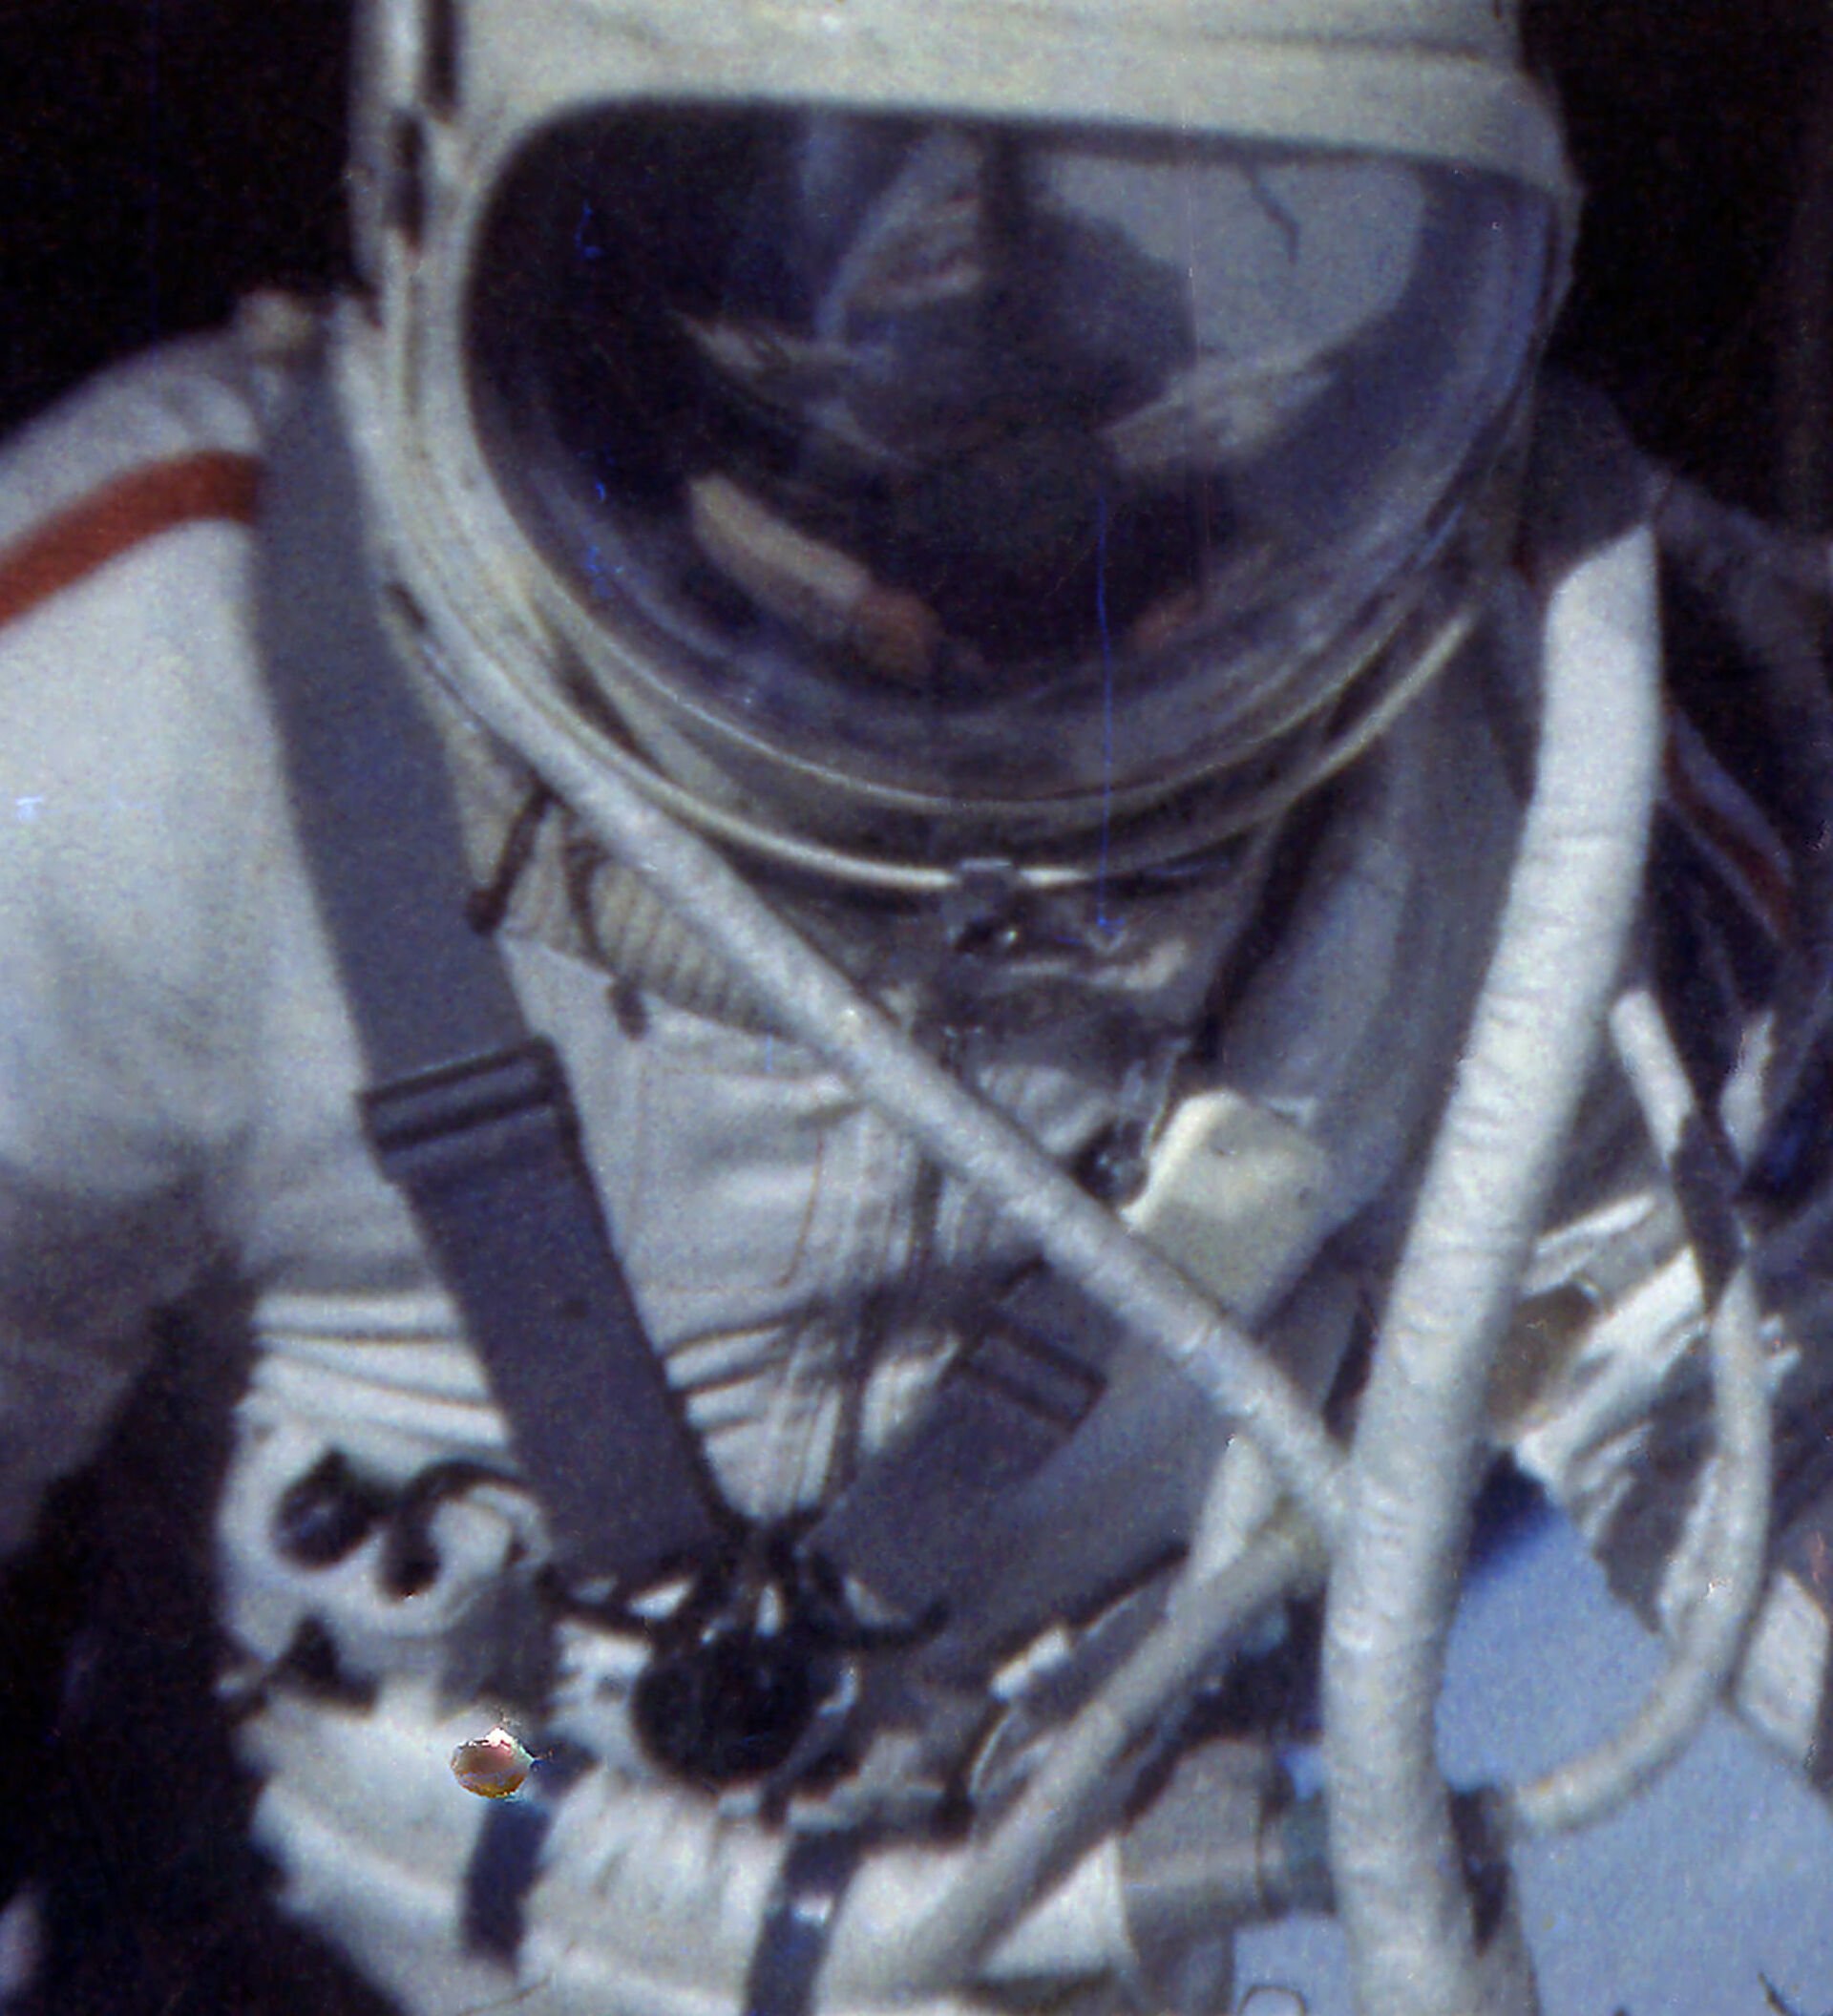 Фамилия первого космонавта в открытом космосе. Восход-2 Леонов в космосе.